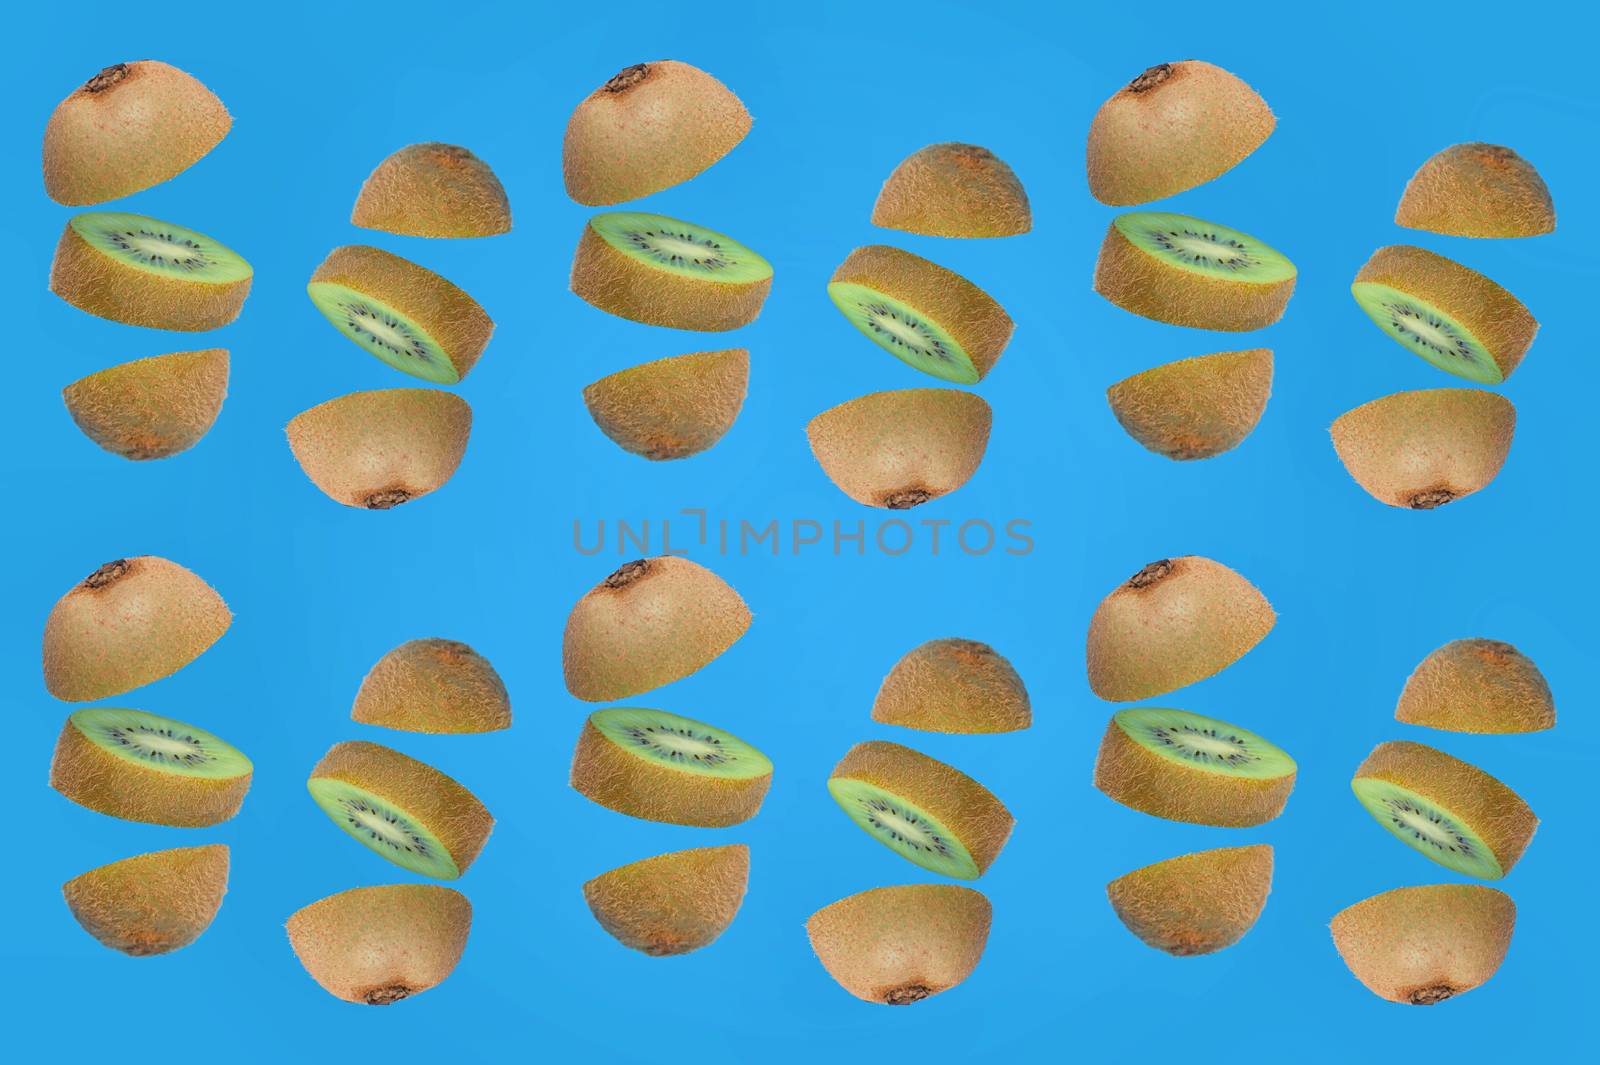 Pattern Of Fresh Kiwi Slices on Blue Background